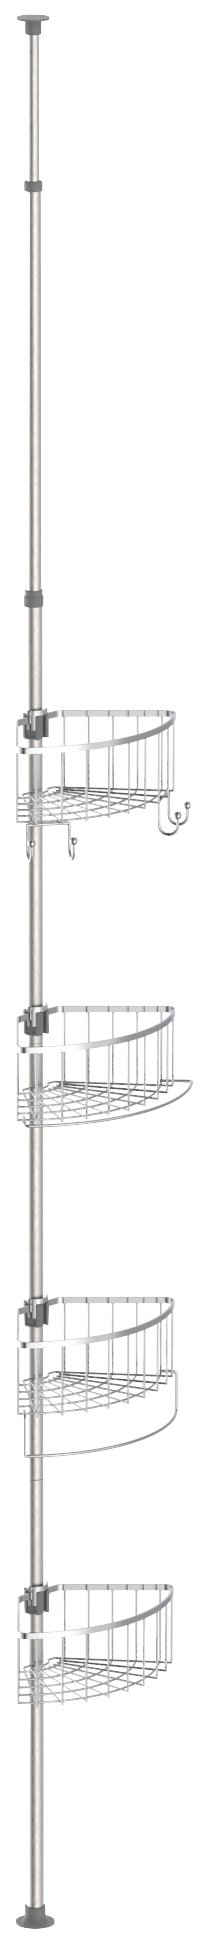 Eisl Duschregal »Teleskop«, höhenverstellbar, 4 abnehmbare Körbe, Edelstahl, leichte Montage